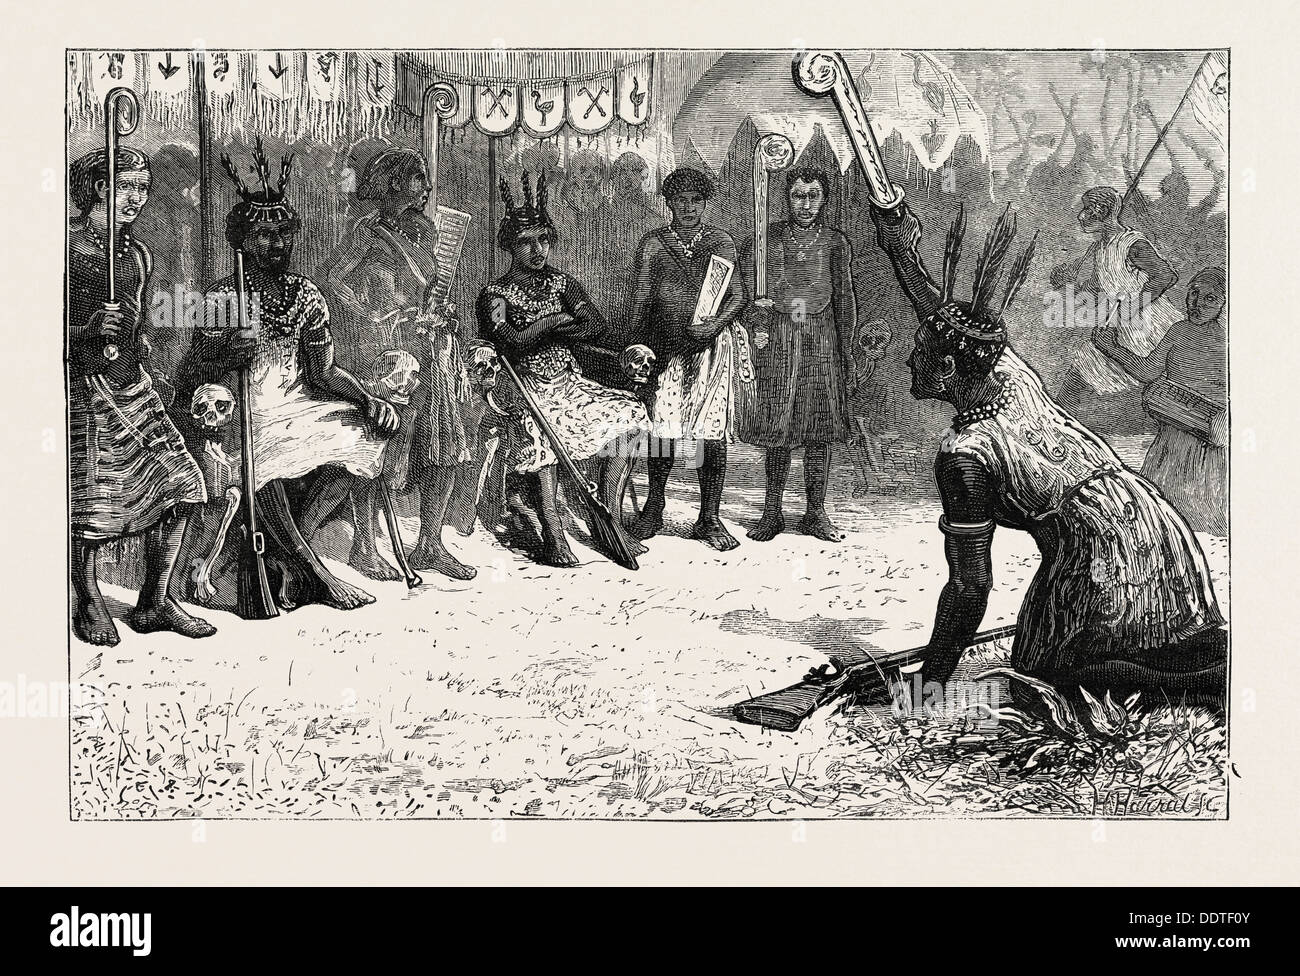 THE ASHANTEE WAR: A PALAVER OF NATIVE KINGS, ANGLO ASHANTI WAR, GHANA, 1873 engraving Stock Photo